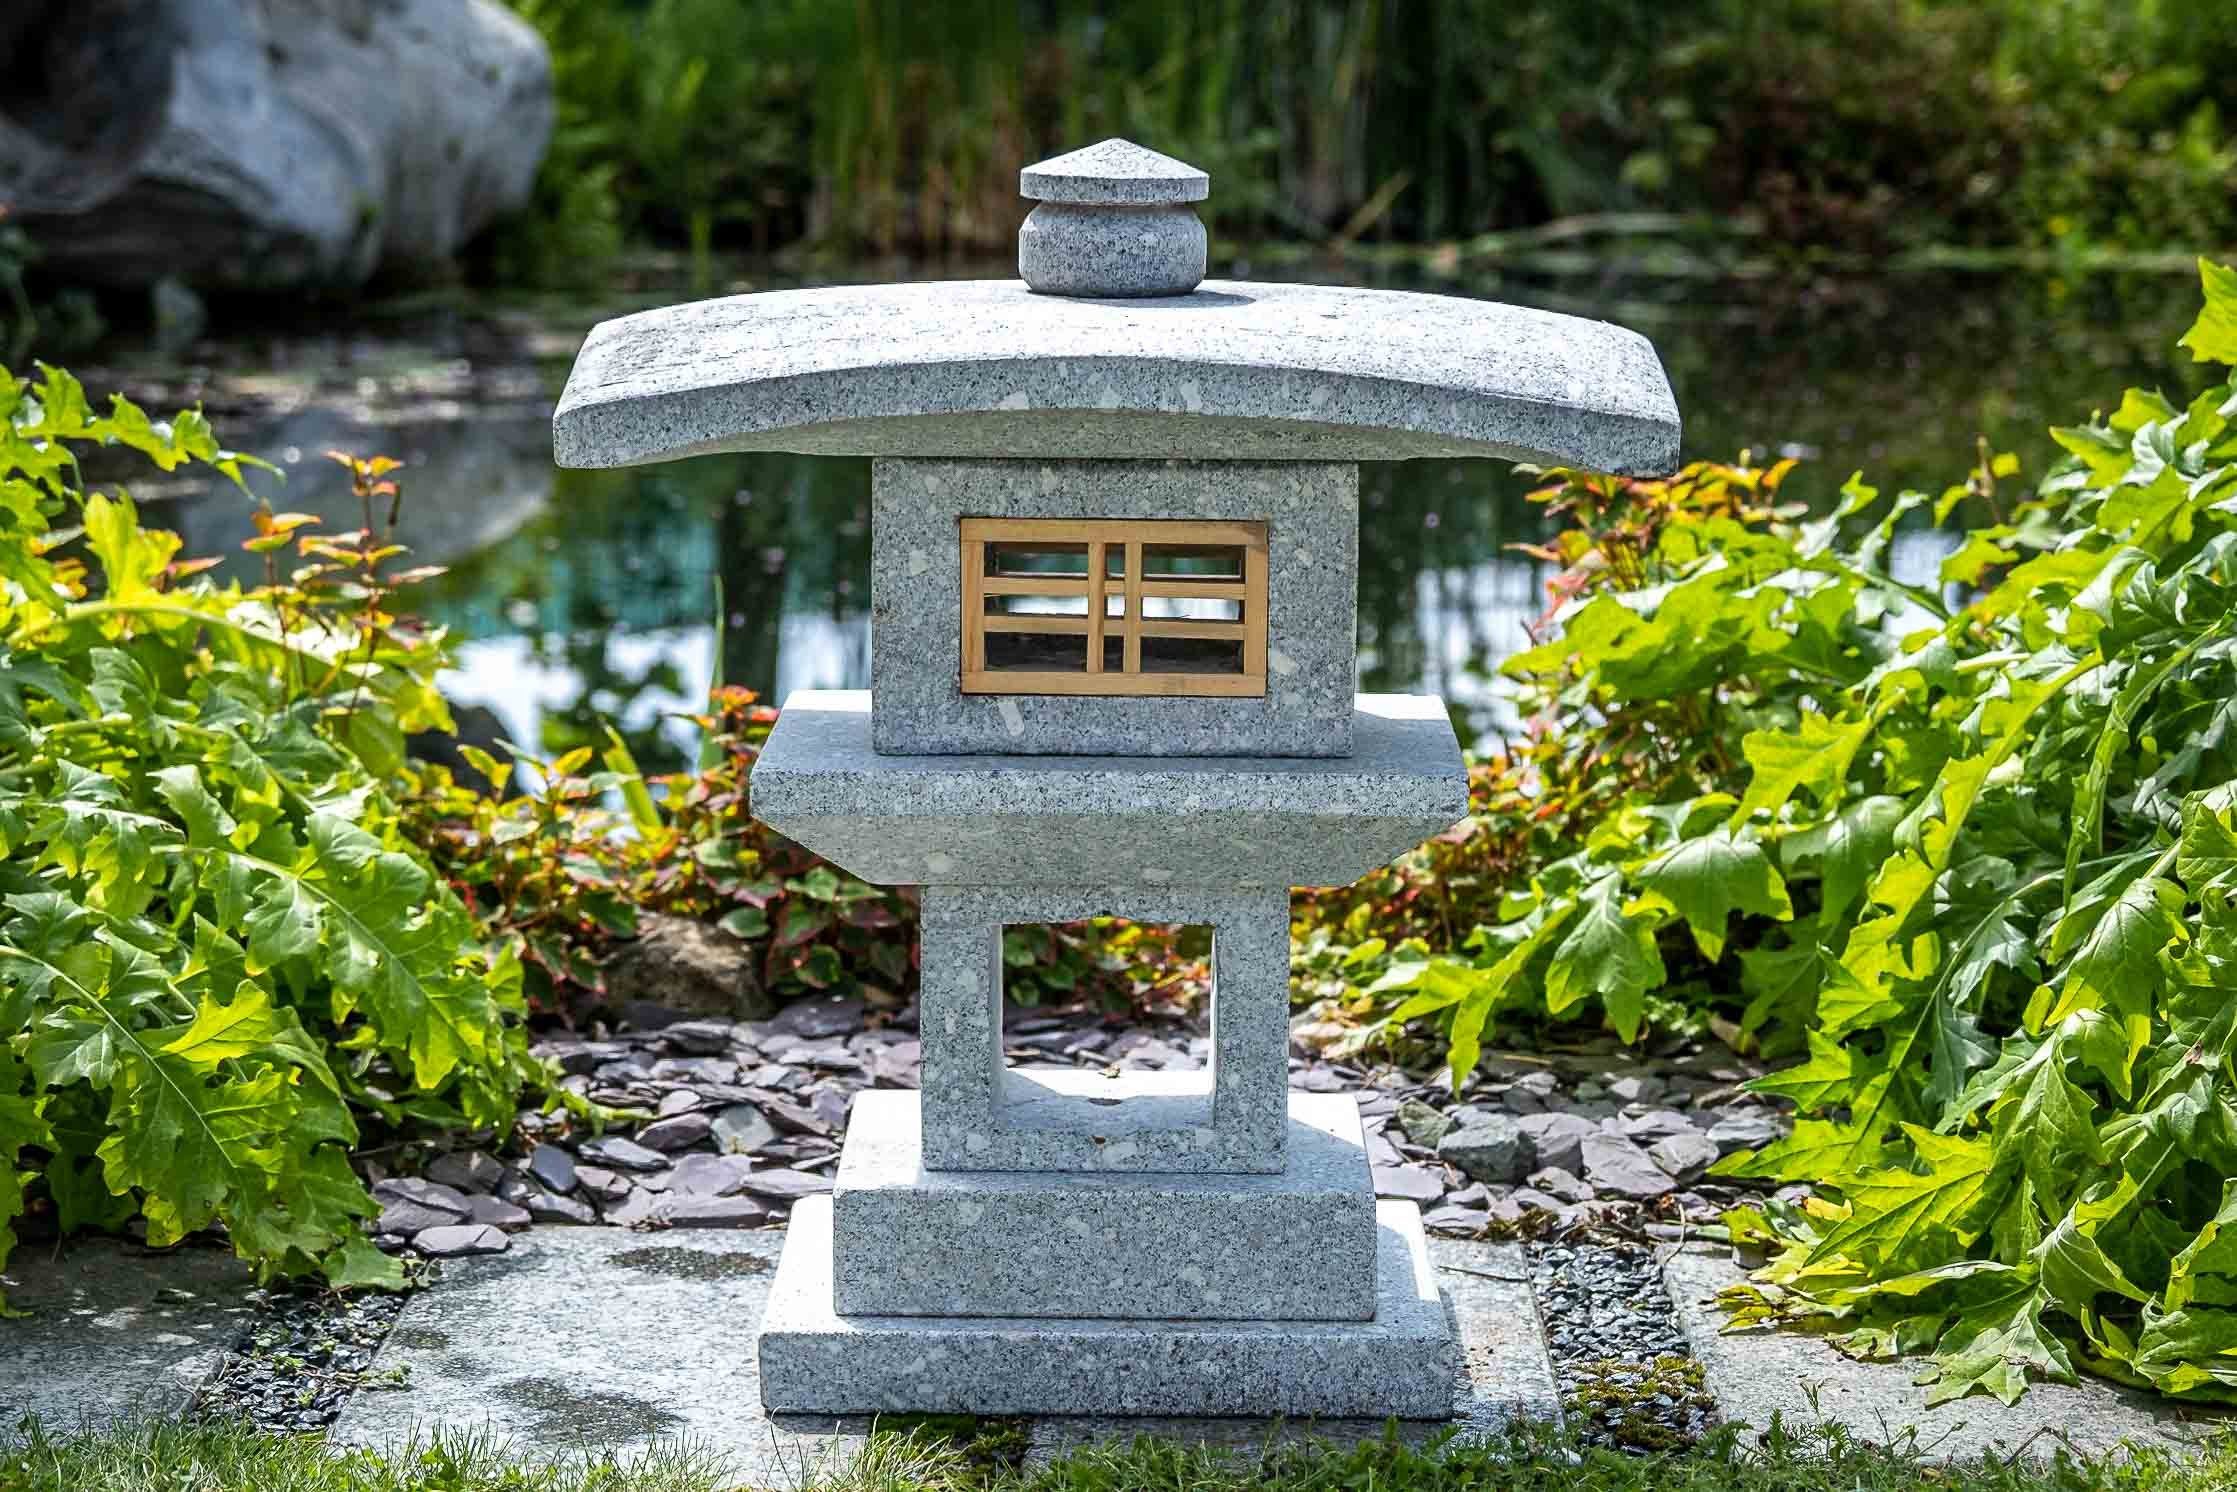 IDYL Gartenfigur Granit Kanjuji, Granit Frost, gegen ein und witterungsbeständig Naturprodukt – – sehr Regen robust UV-Strahlung. –